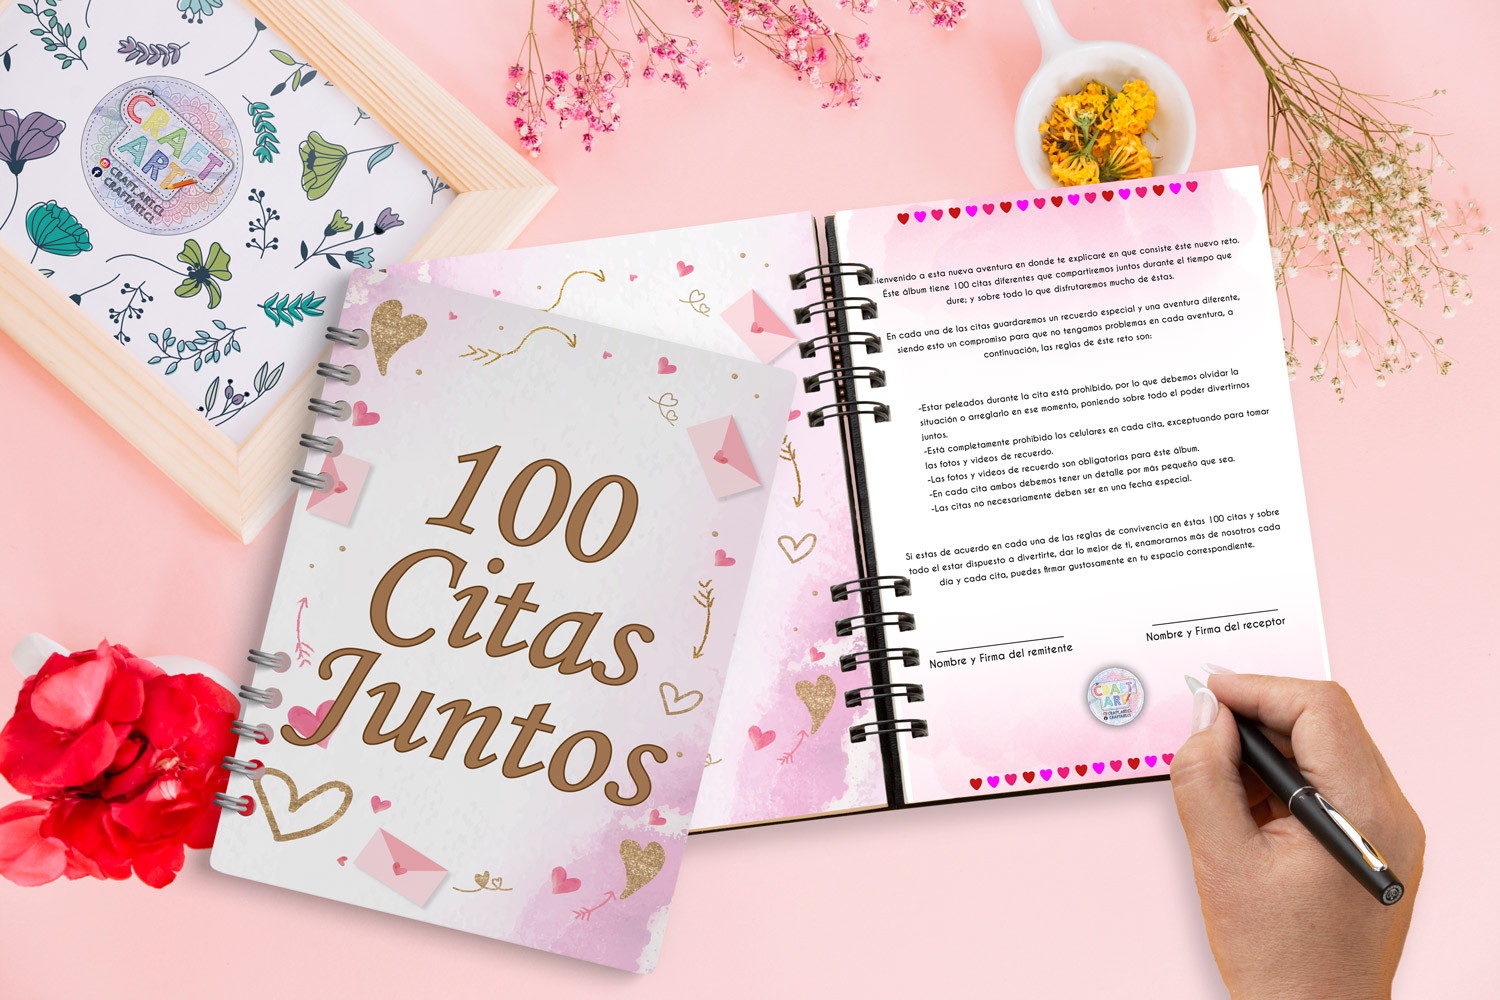 Pagendas - Agendas on Instagram: Libro de las 100 citas juntos De